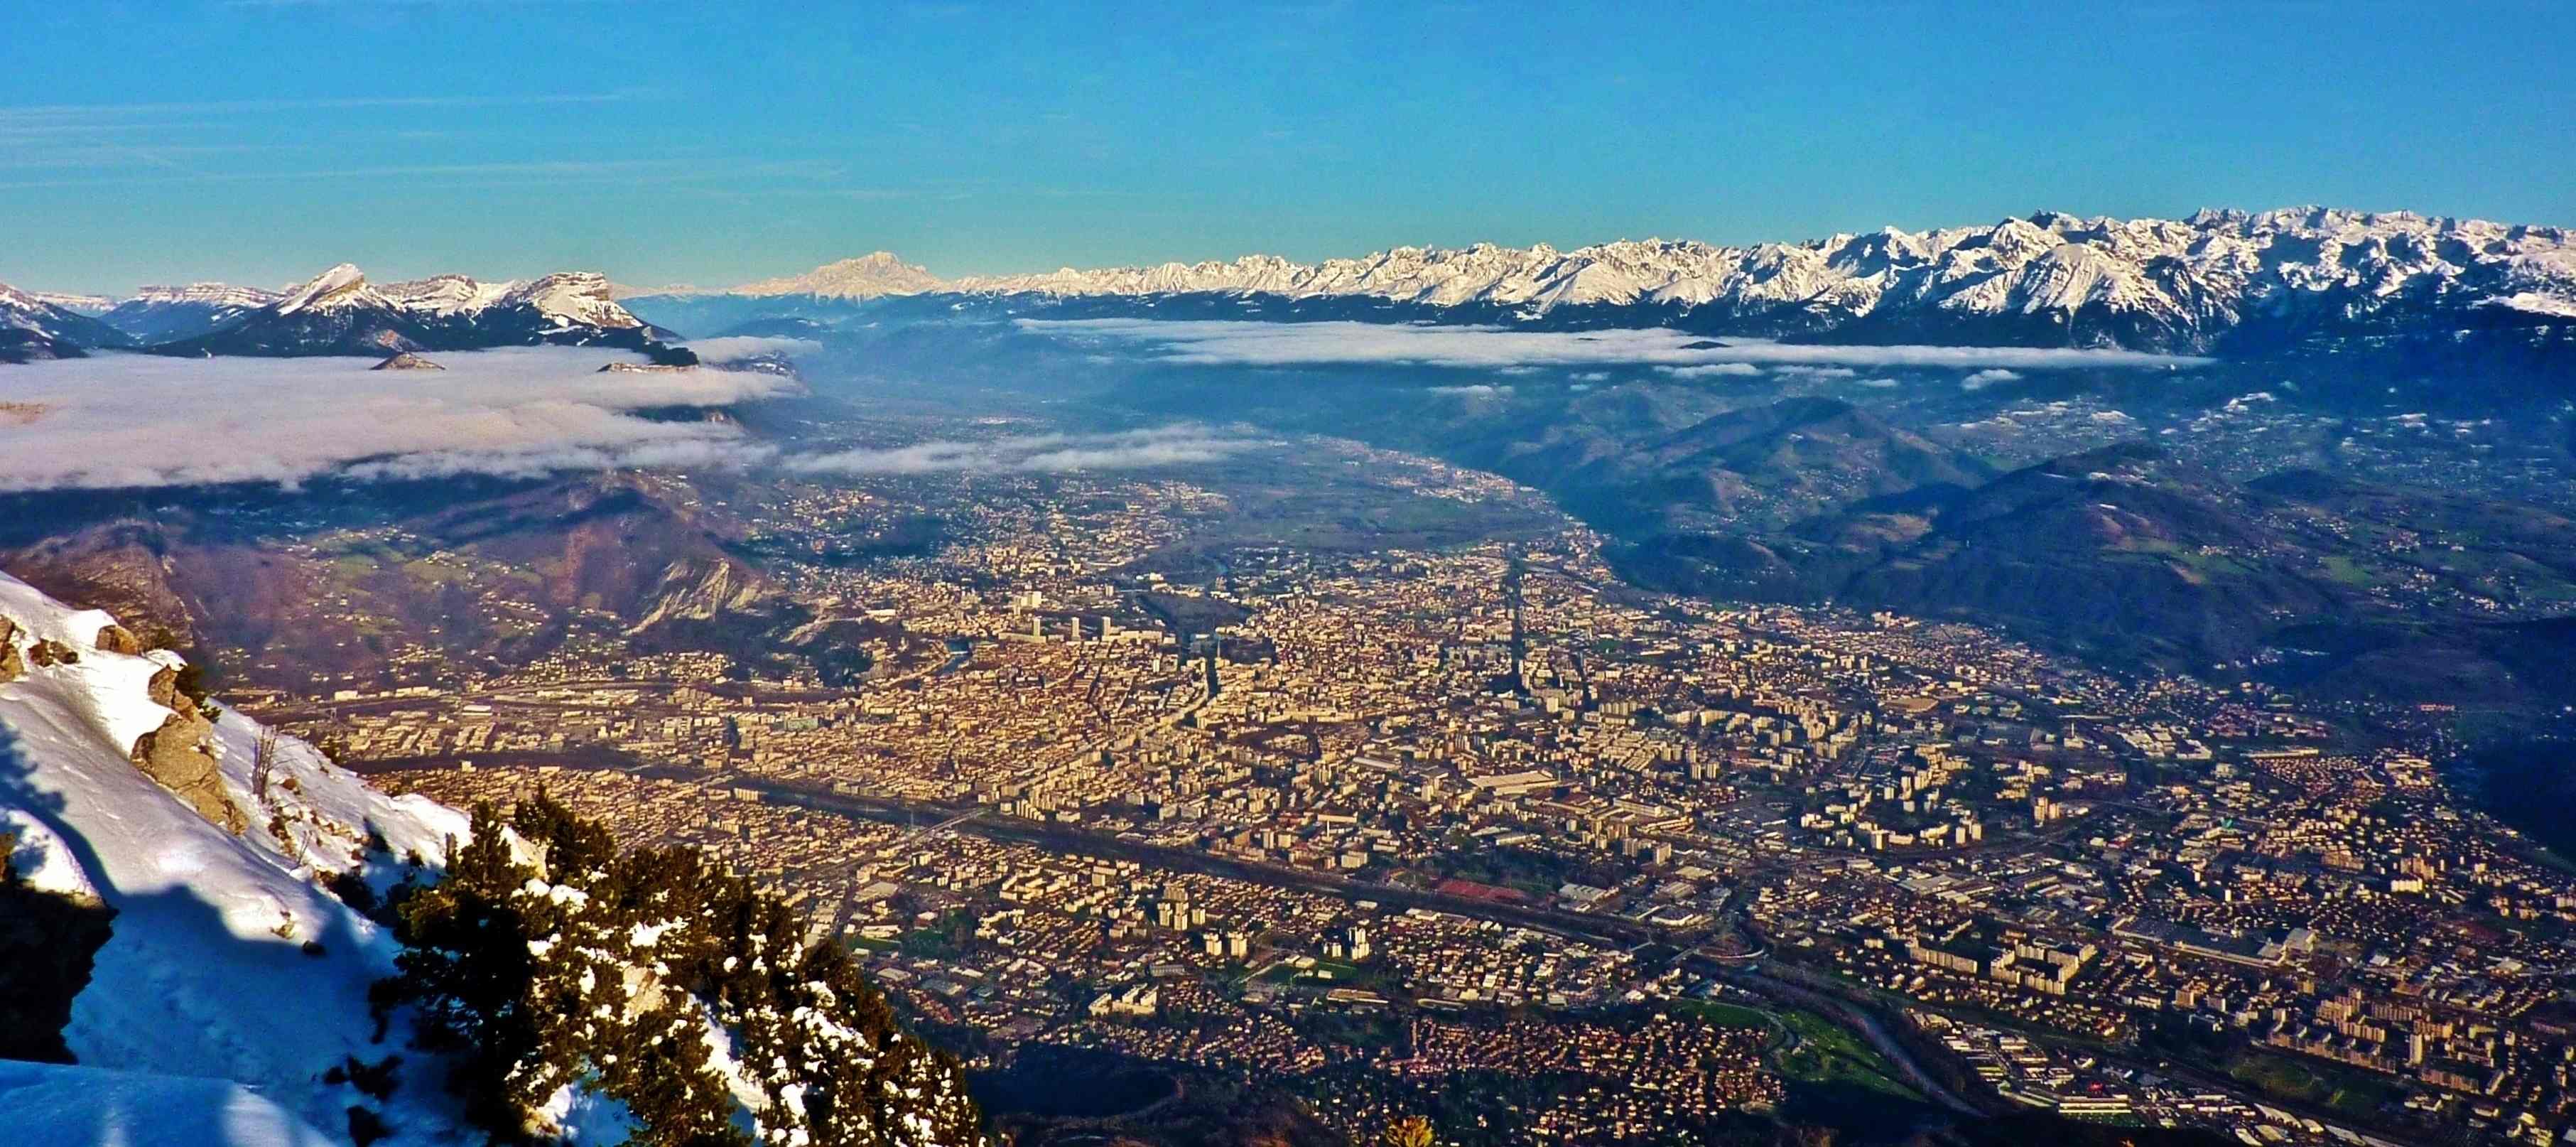 Vue sur l'agglomération Grenobloise depuis le sommet du Moucherotte (1901 m). Vue sur les massifs de Chartreuse, du Mont Blanc, de Belledonne et des Grandes Rousses.